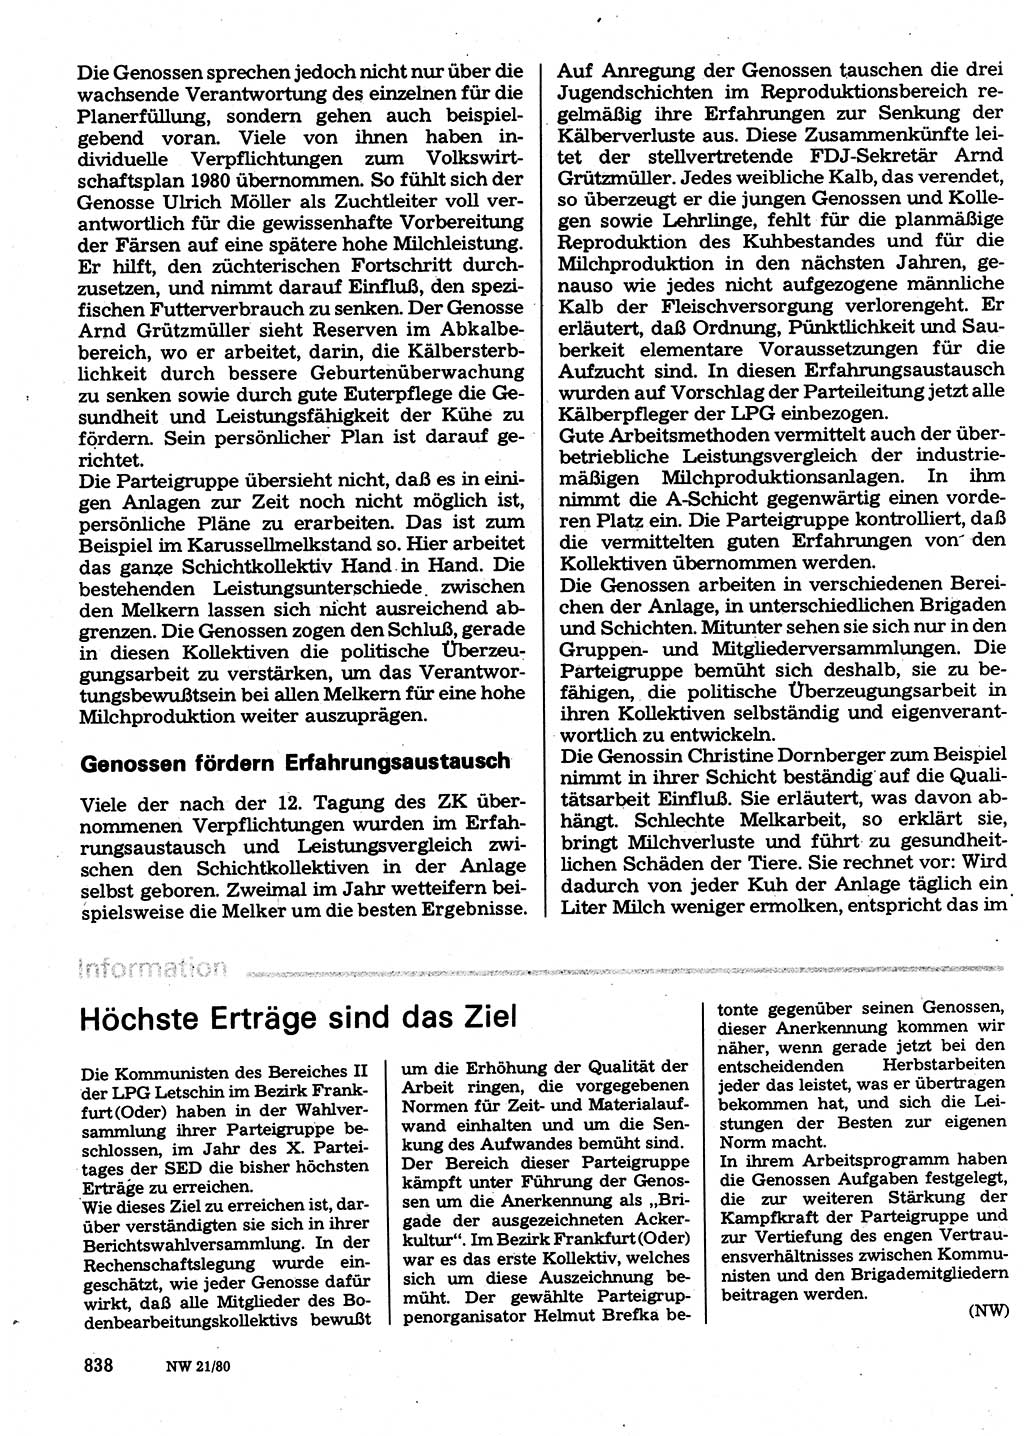 Neuer Weg (NW), Organ des Zentralkomitees (ZK) der SED (Sozialistische Einheitspartei Deutschlands) für Fragen des Parteilebens, 35. Jahrgang [Deutsche Demokratische Republik (DDR)] 1980, Seite 838 (NW ZK SED DDR 1980, S. 838)